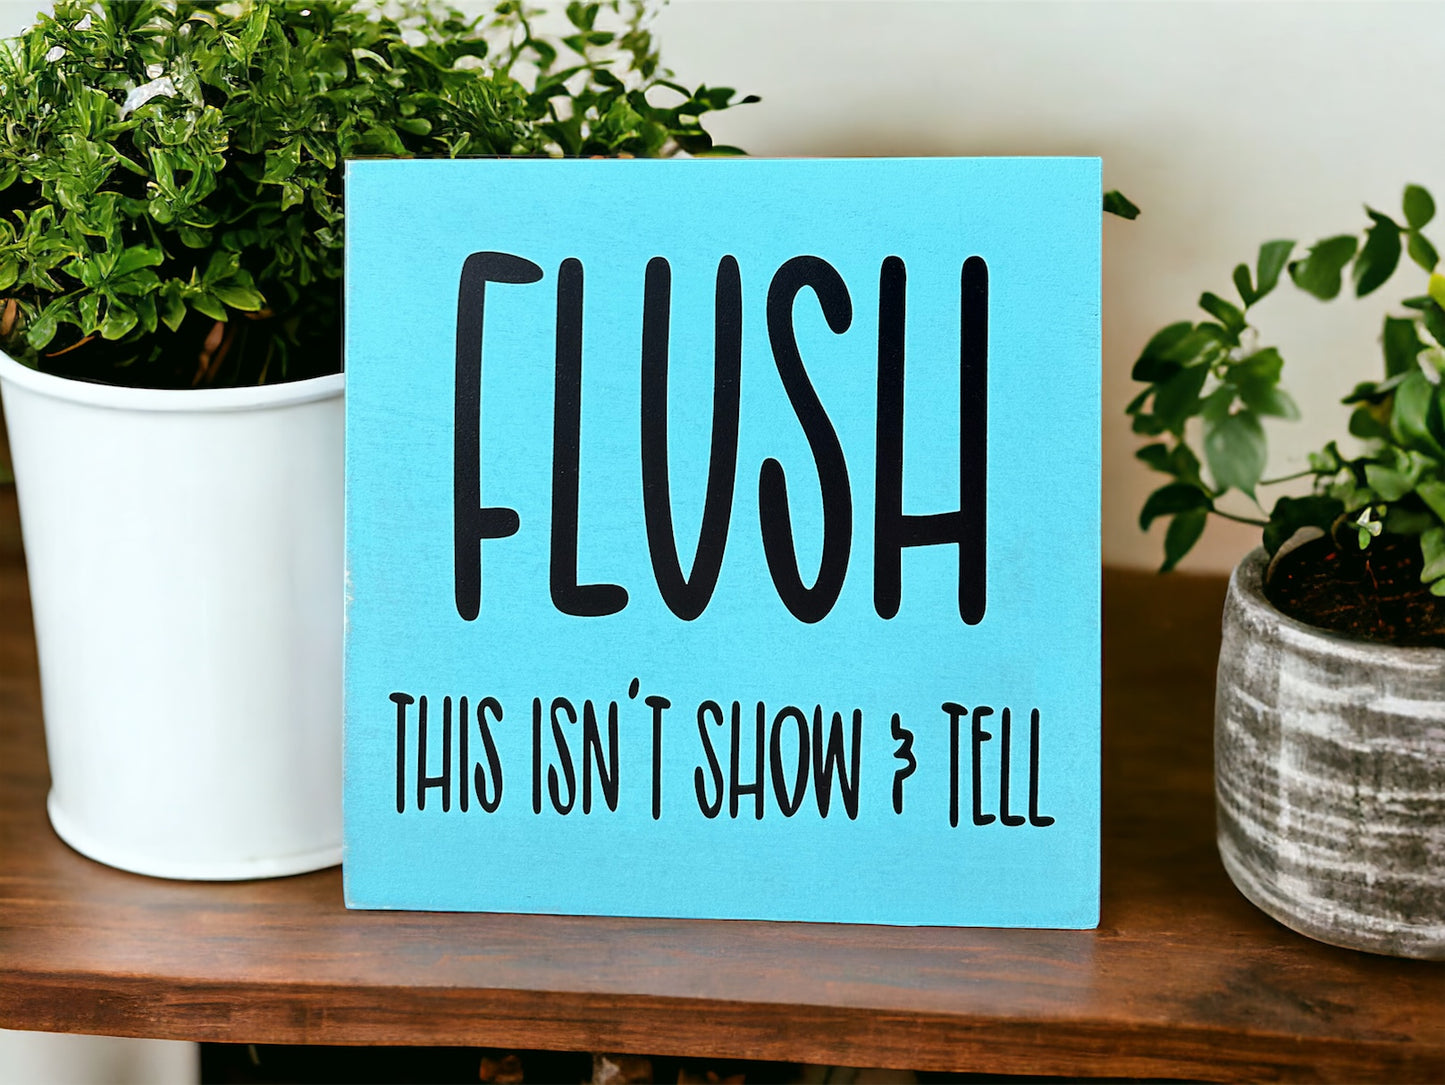 Flush - Funny Bathroom Rustic Shelf Sitter